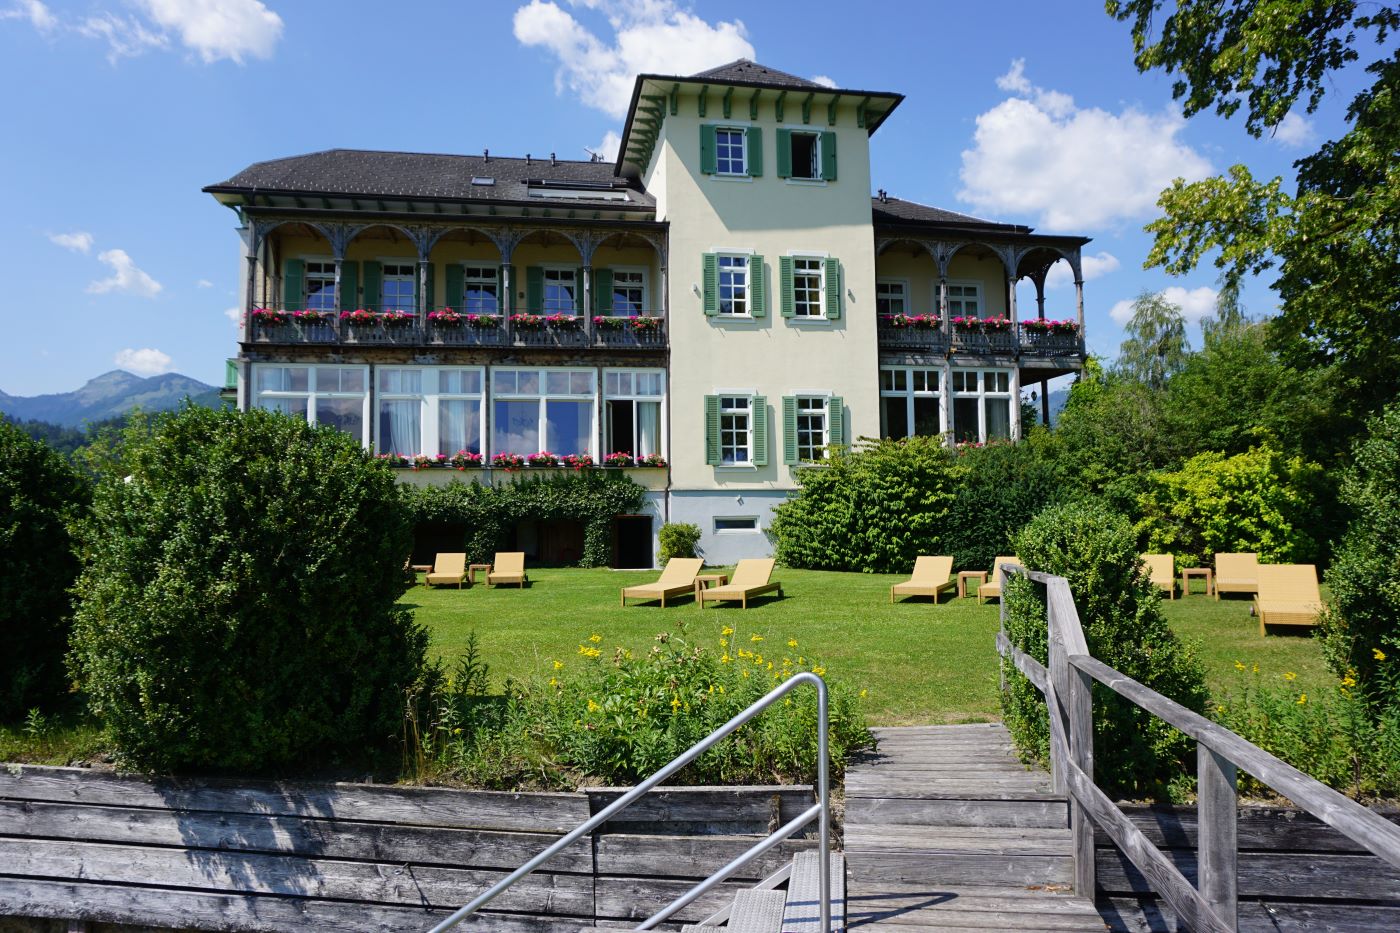 Ferienwohnungen am Wolfgangsee - Residenz Seehof - Salzkammergut - Salzburg - Österreich